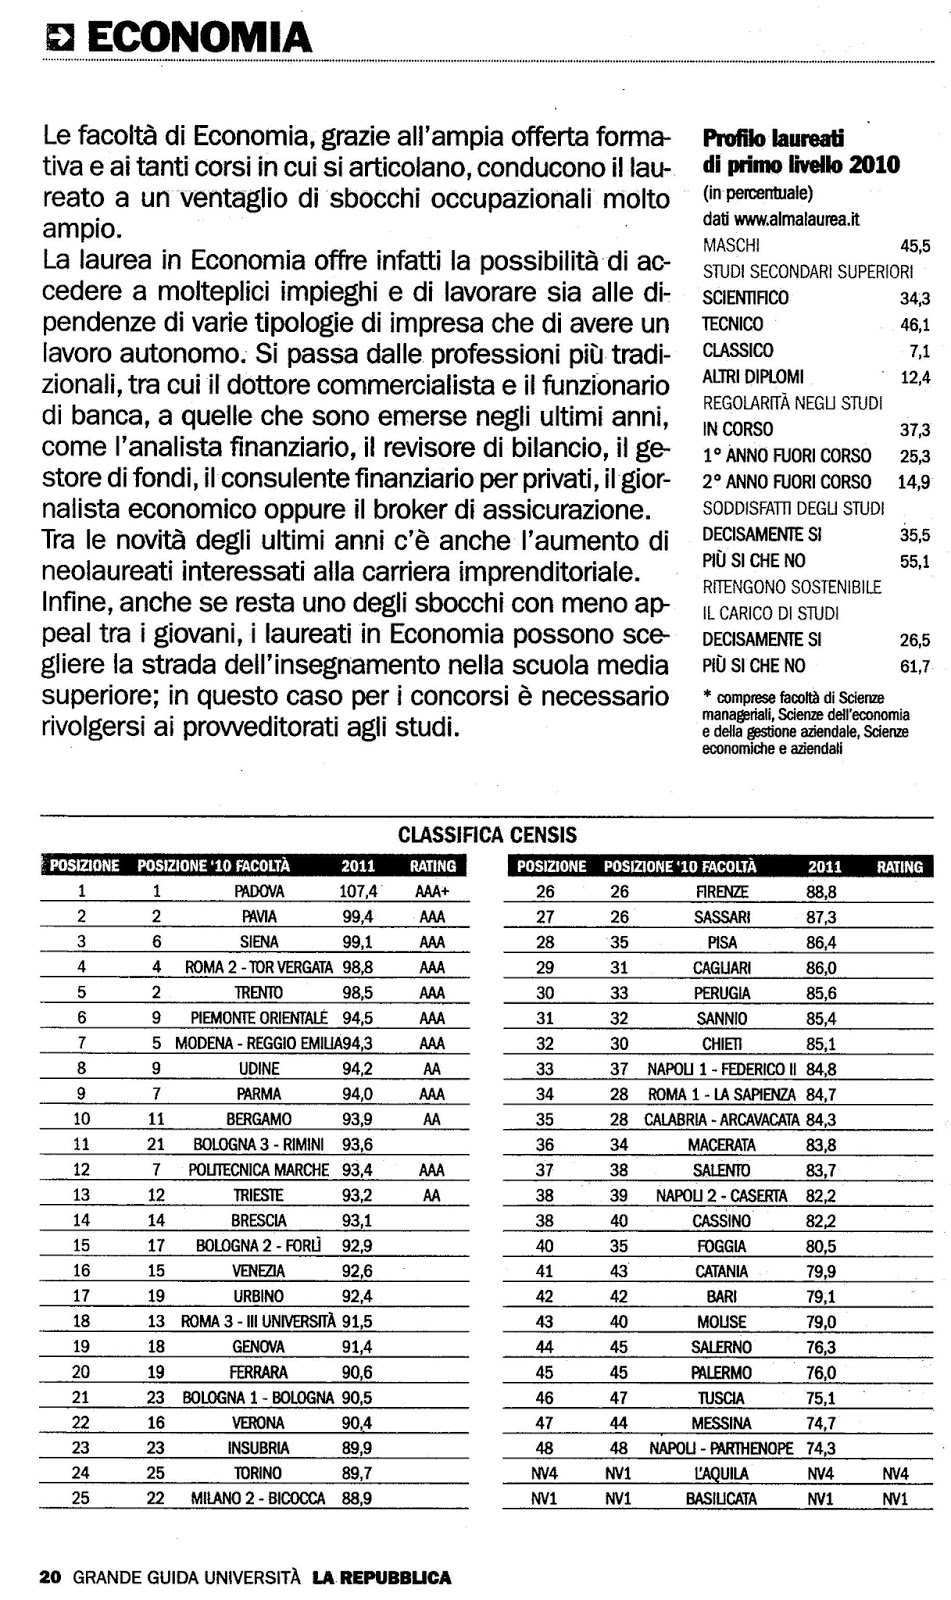 Classifica Università di Economia in Italia